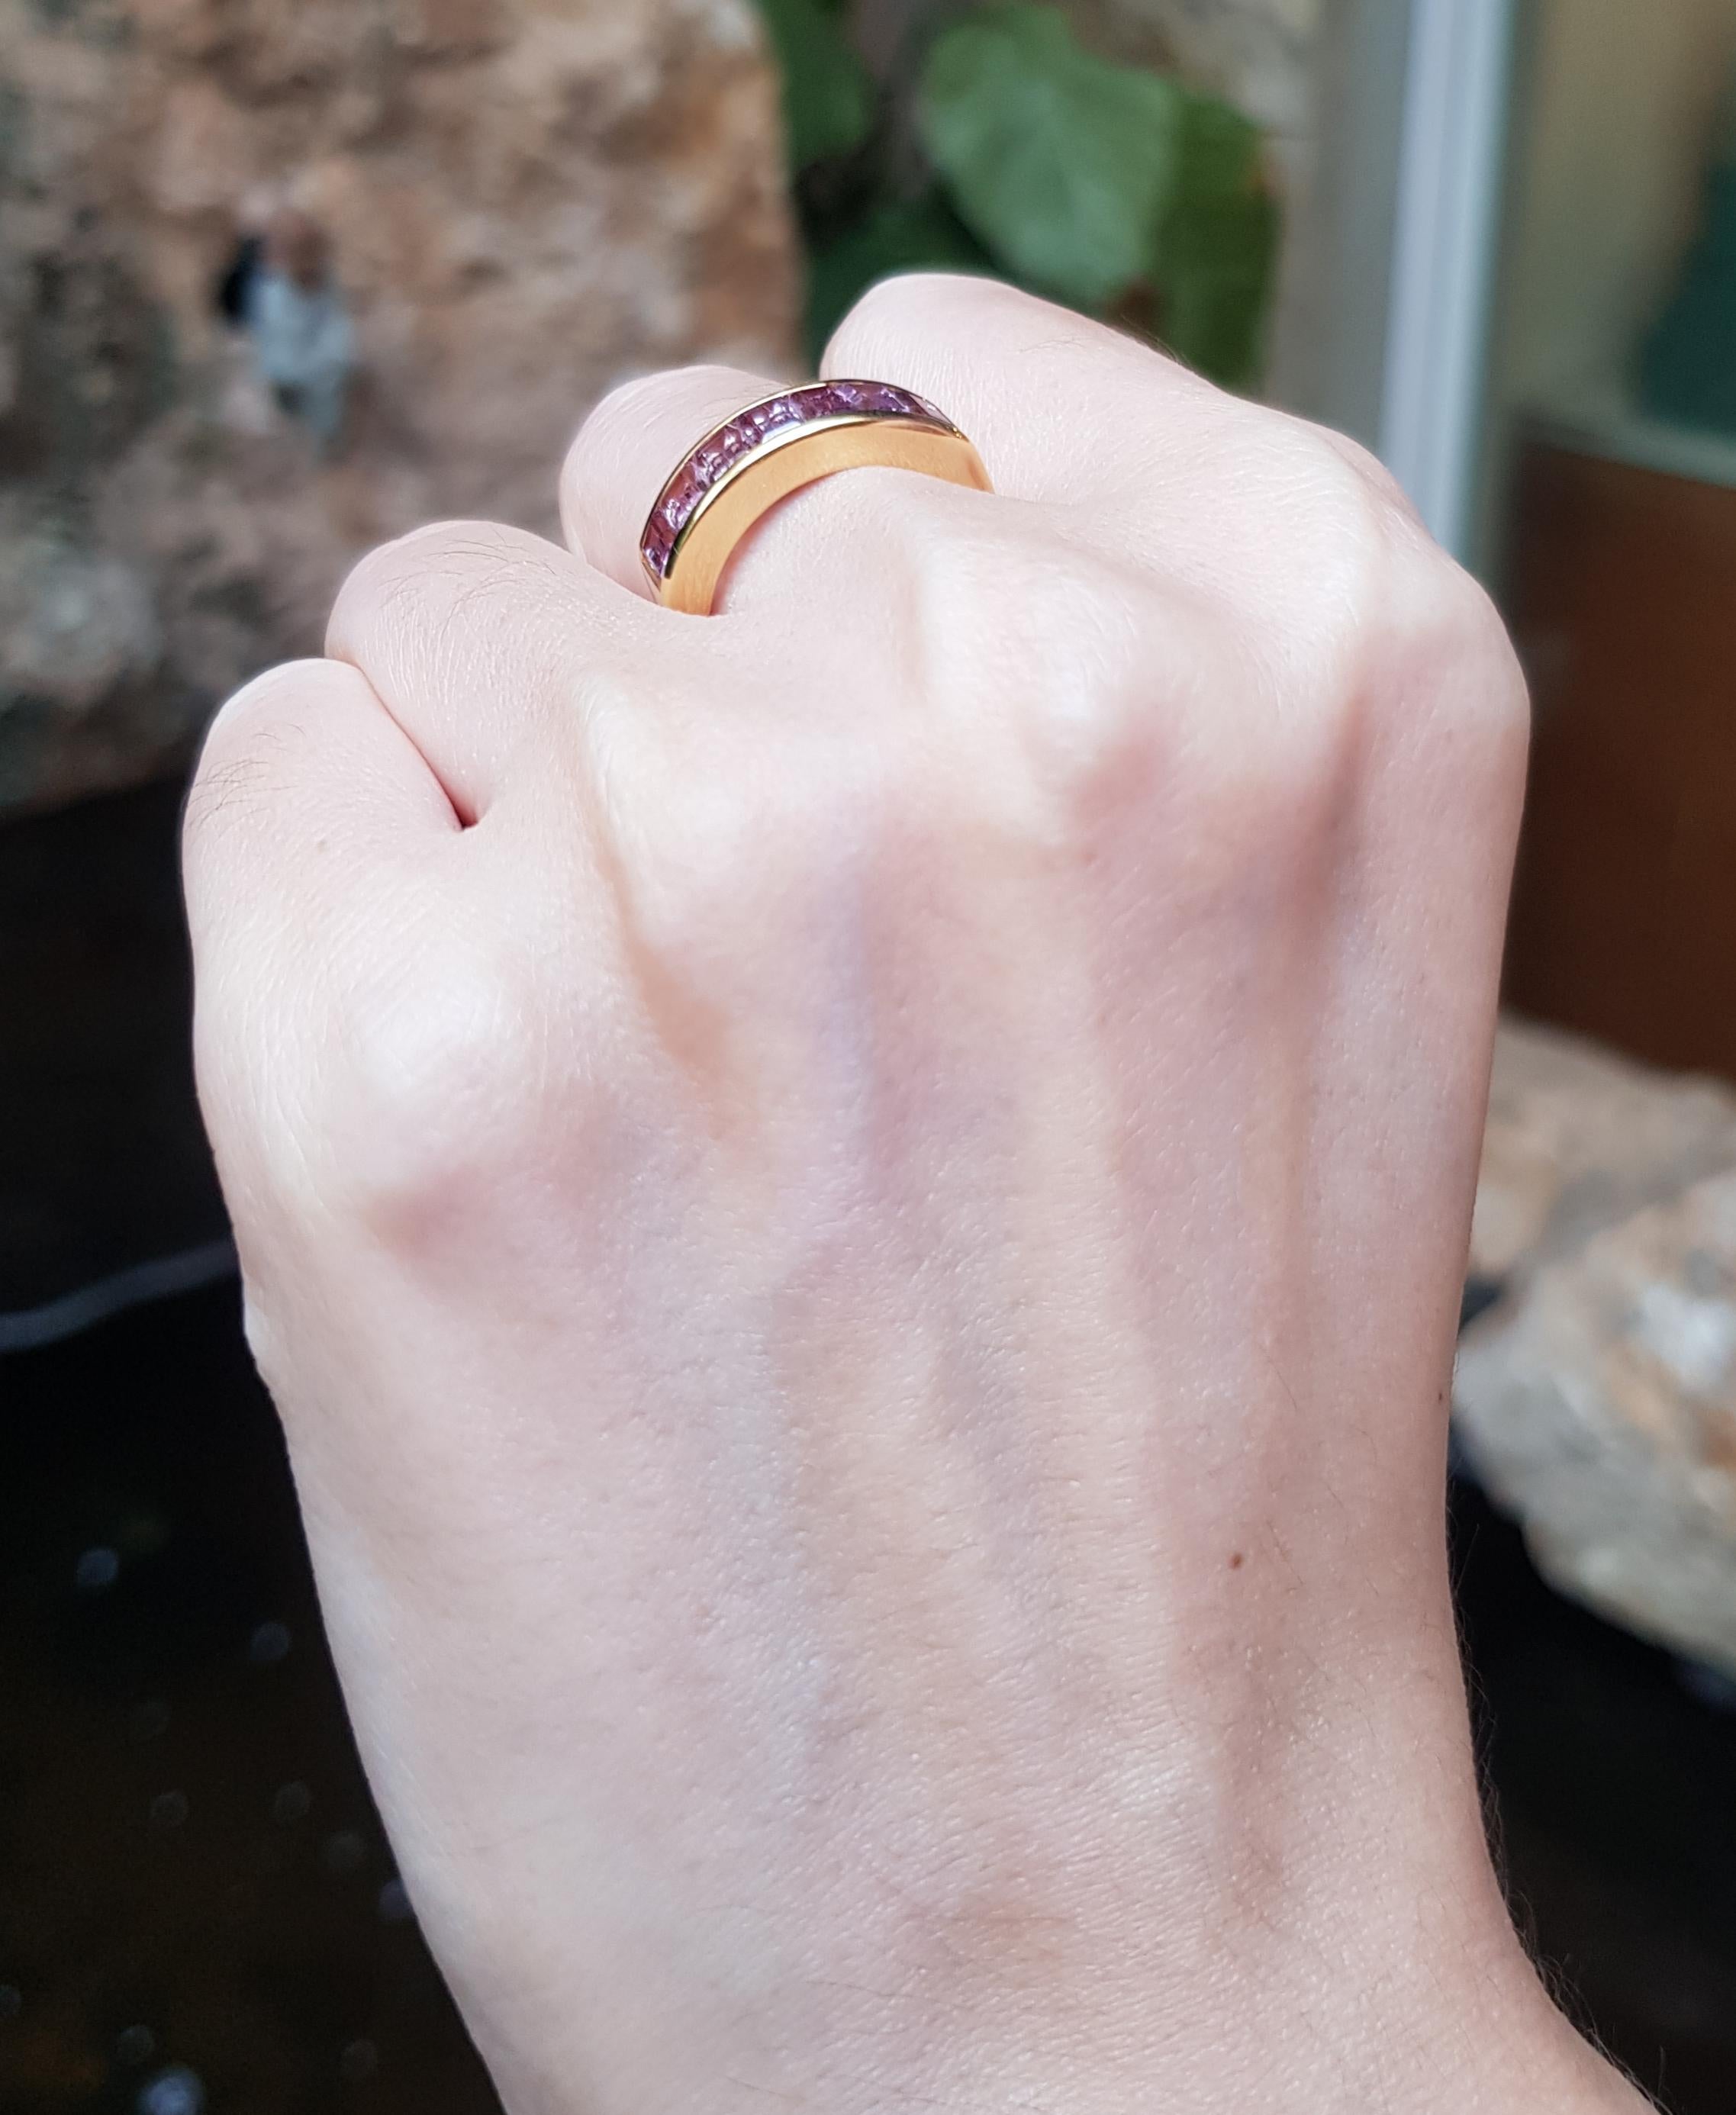 ring size 54 in cm